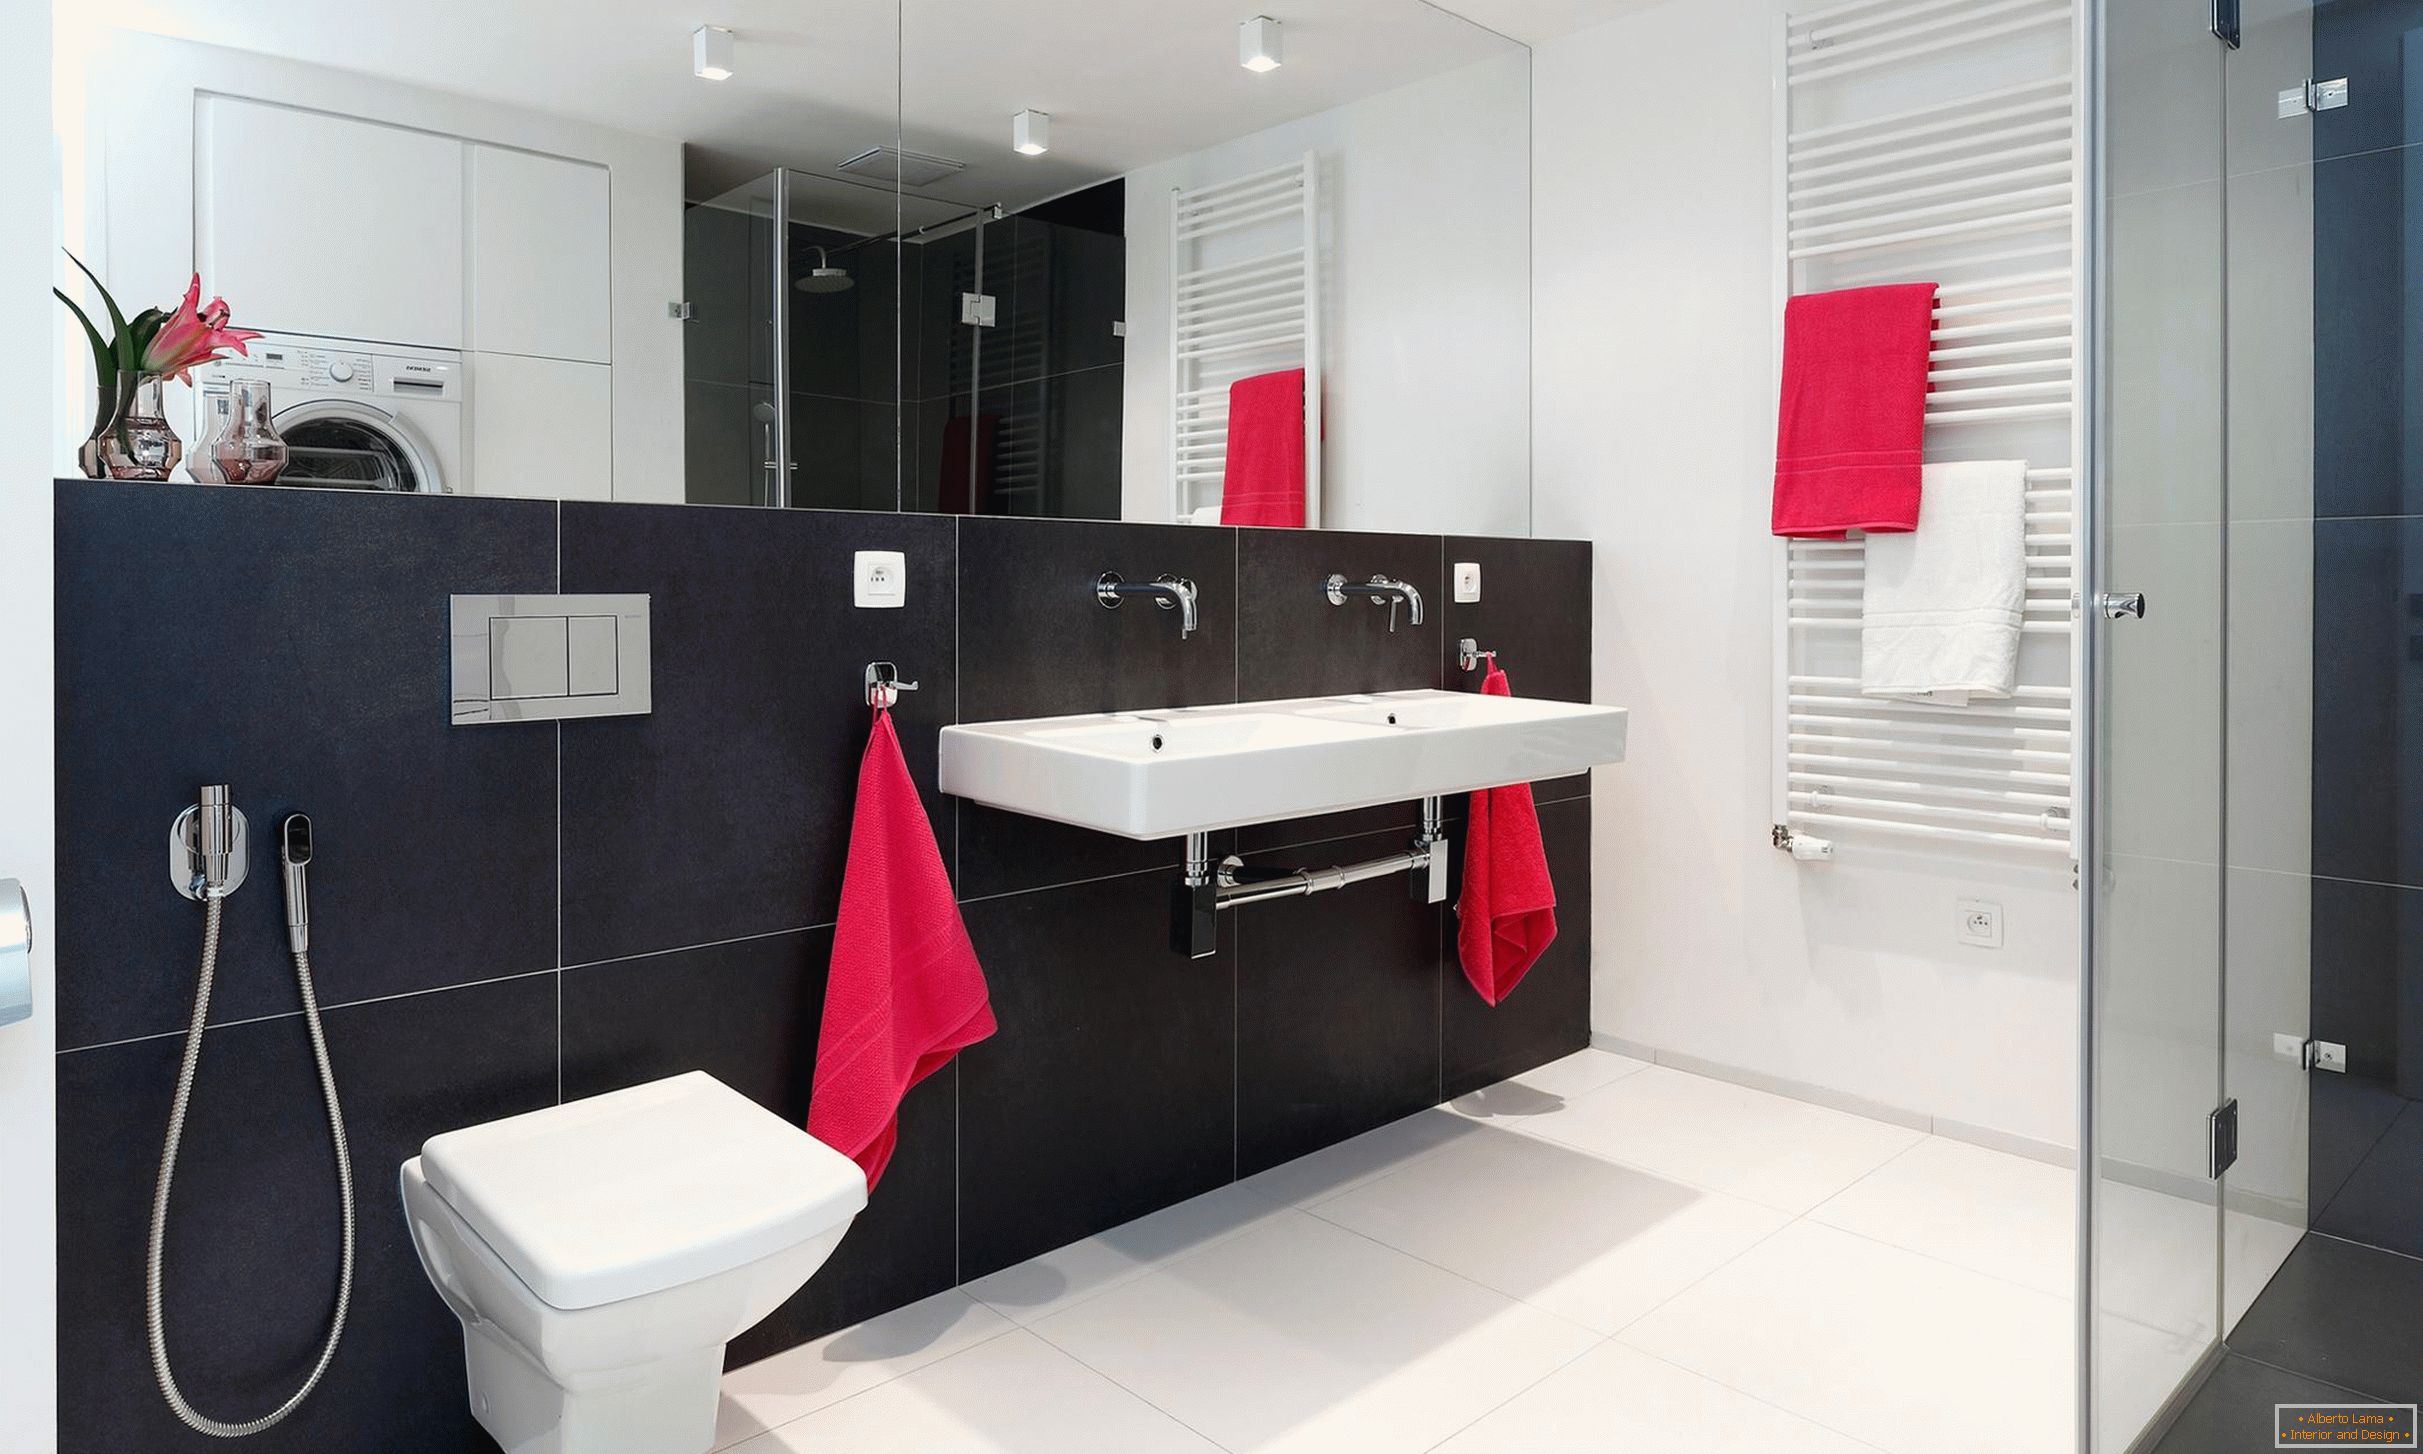 Rouge, blanc et noir dans le design de la salle de bain